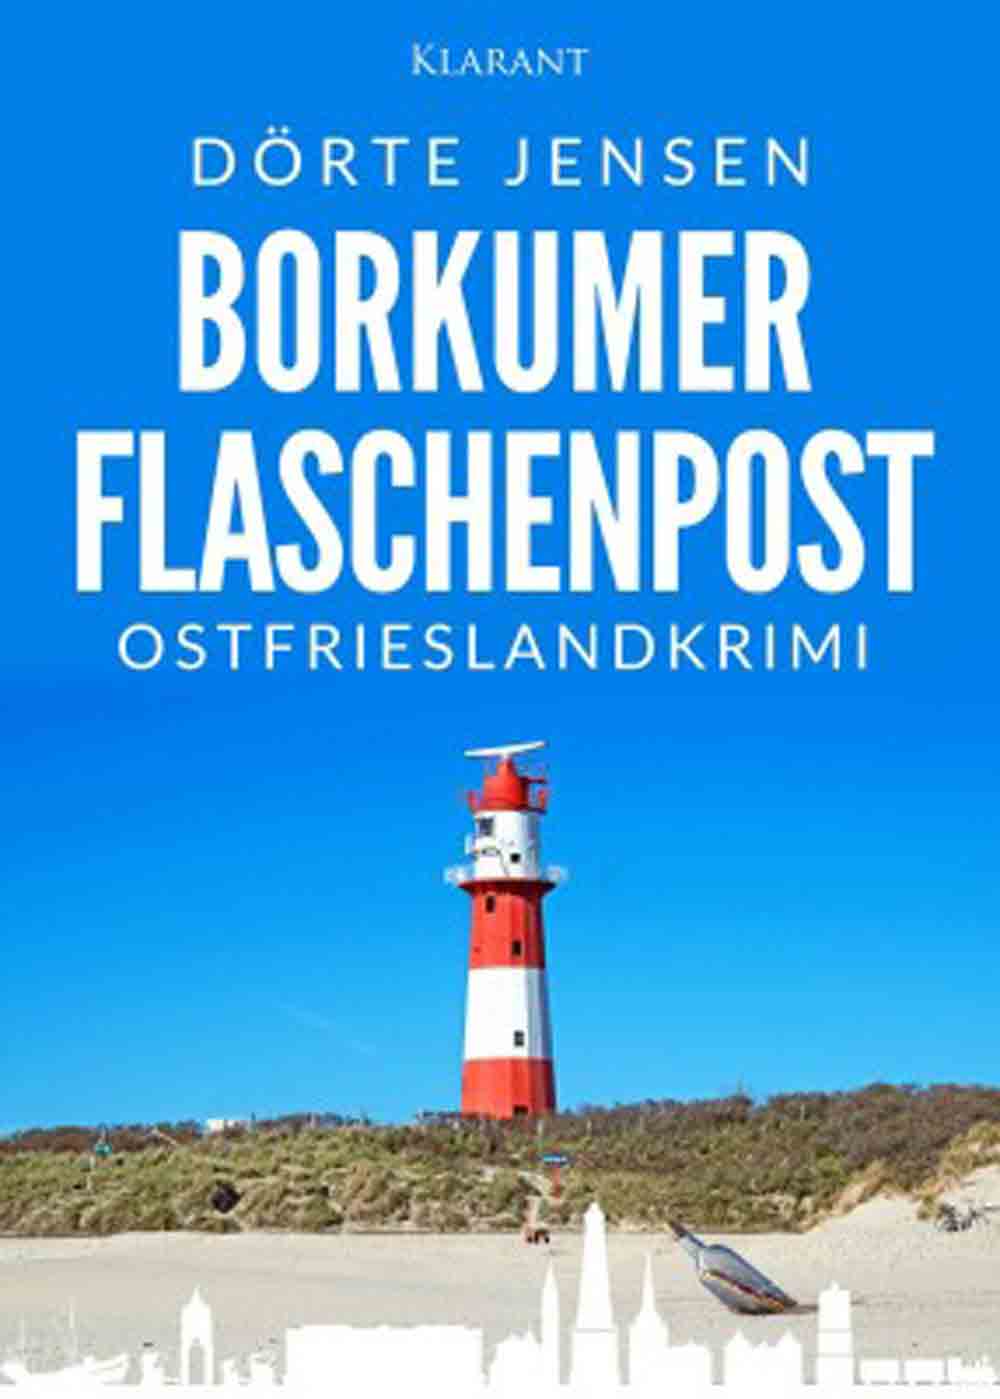 Lesetipps für Gütersloh, Ostfrieslandkrimi »Borkumer Flaschenpost« von Dörte Jensen im Klarant Verlag